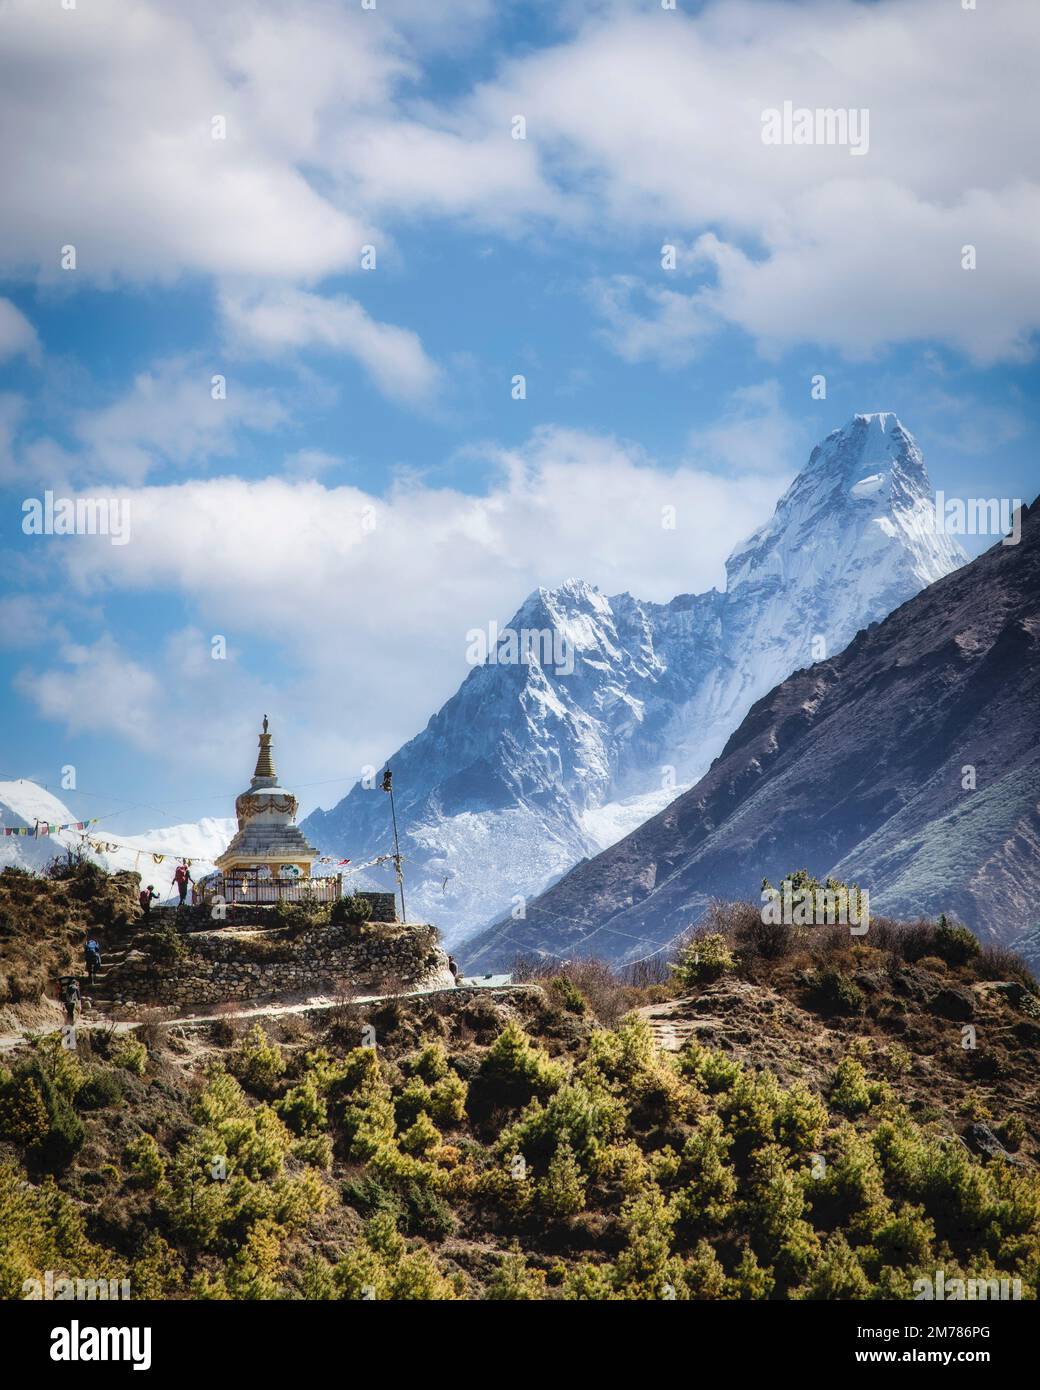 AMA Dablam vient en vue le long de la randonnée du camp de base de l'Everest dans le parc national de Sagarmatha, au Népal. Banque D'Images